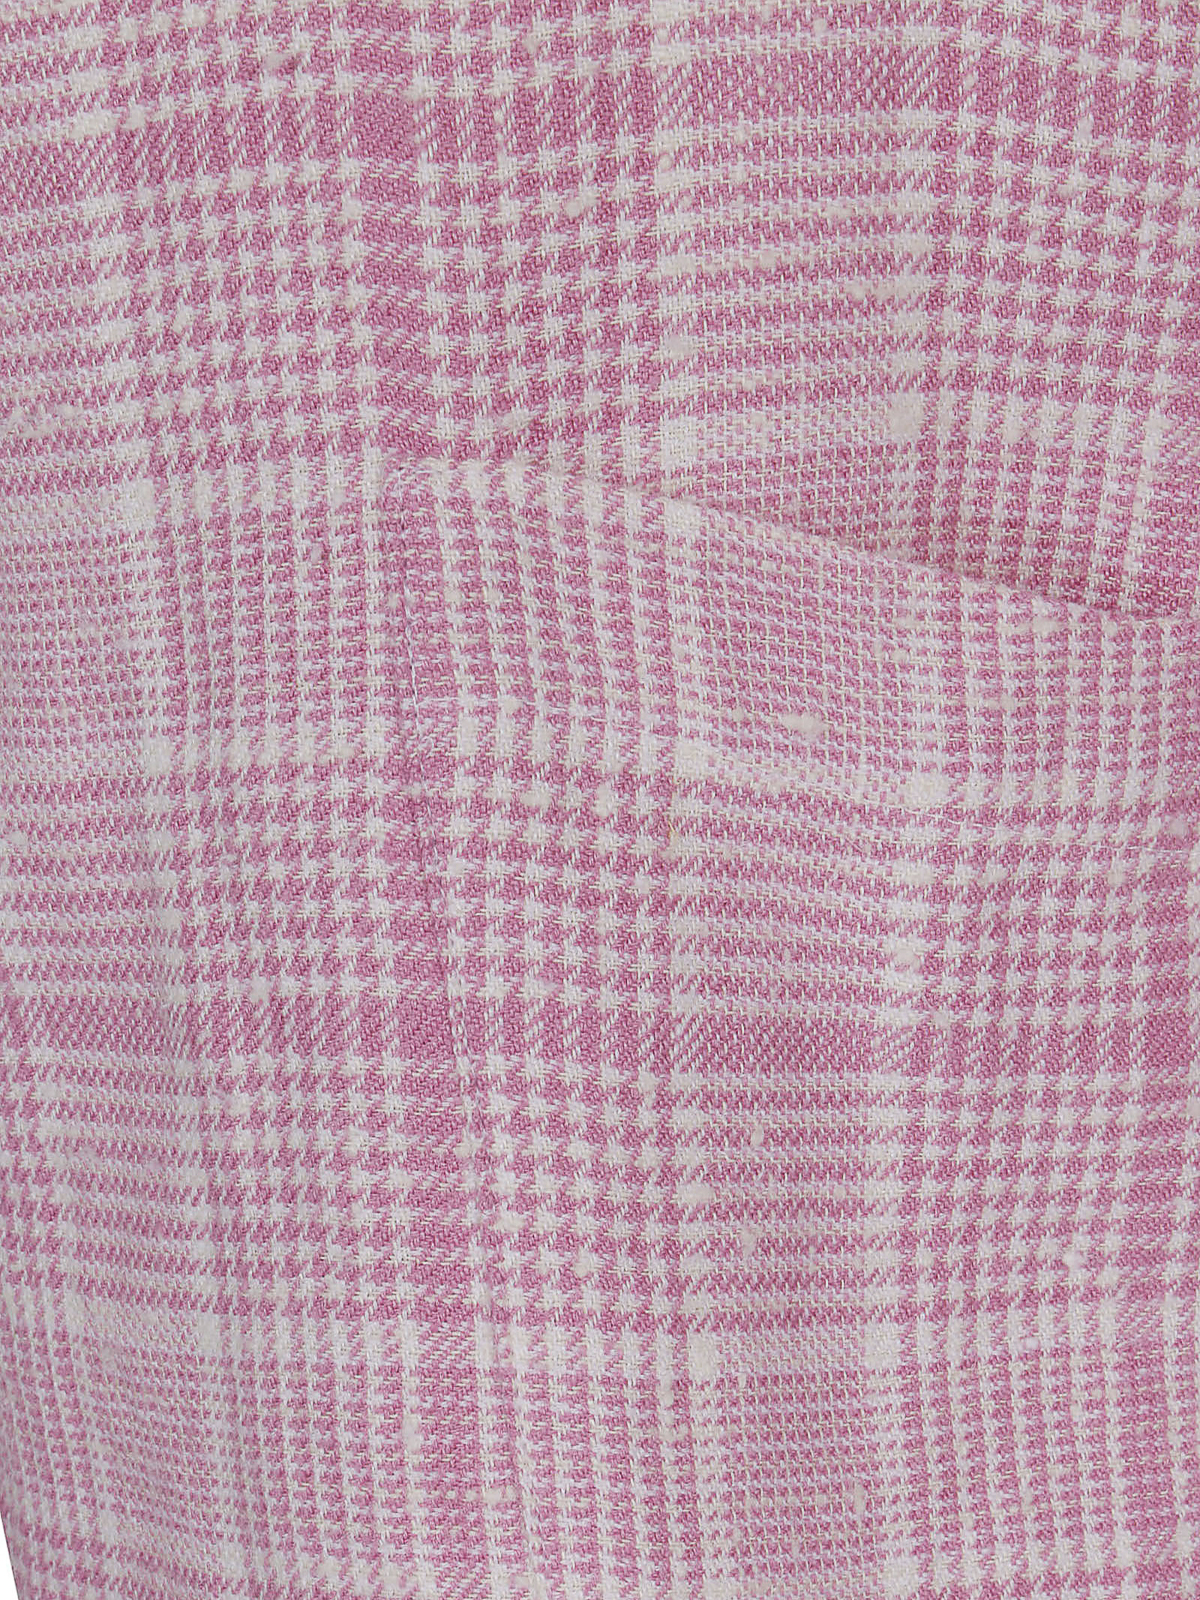 Shop Andrea's Caban Jolie Short Coat In Pink